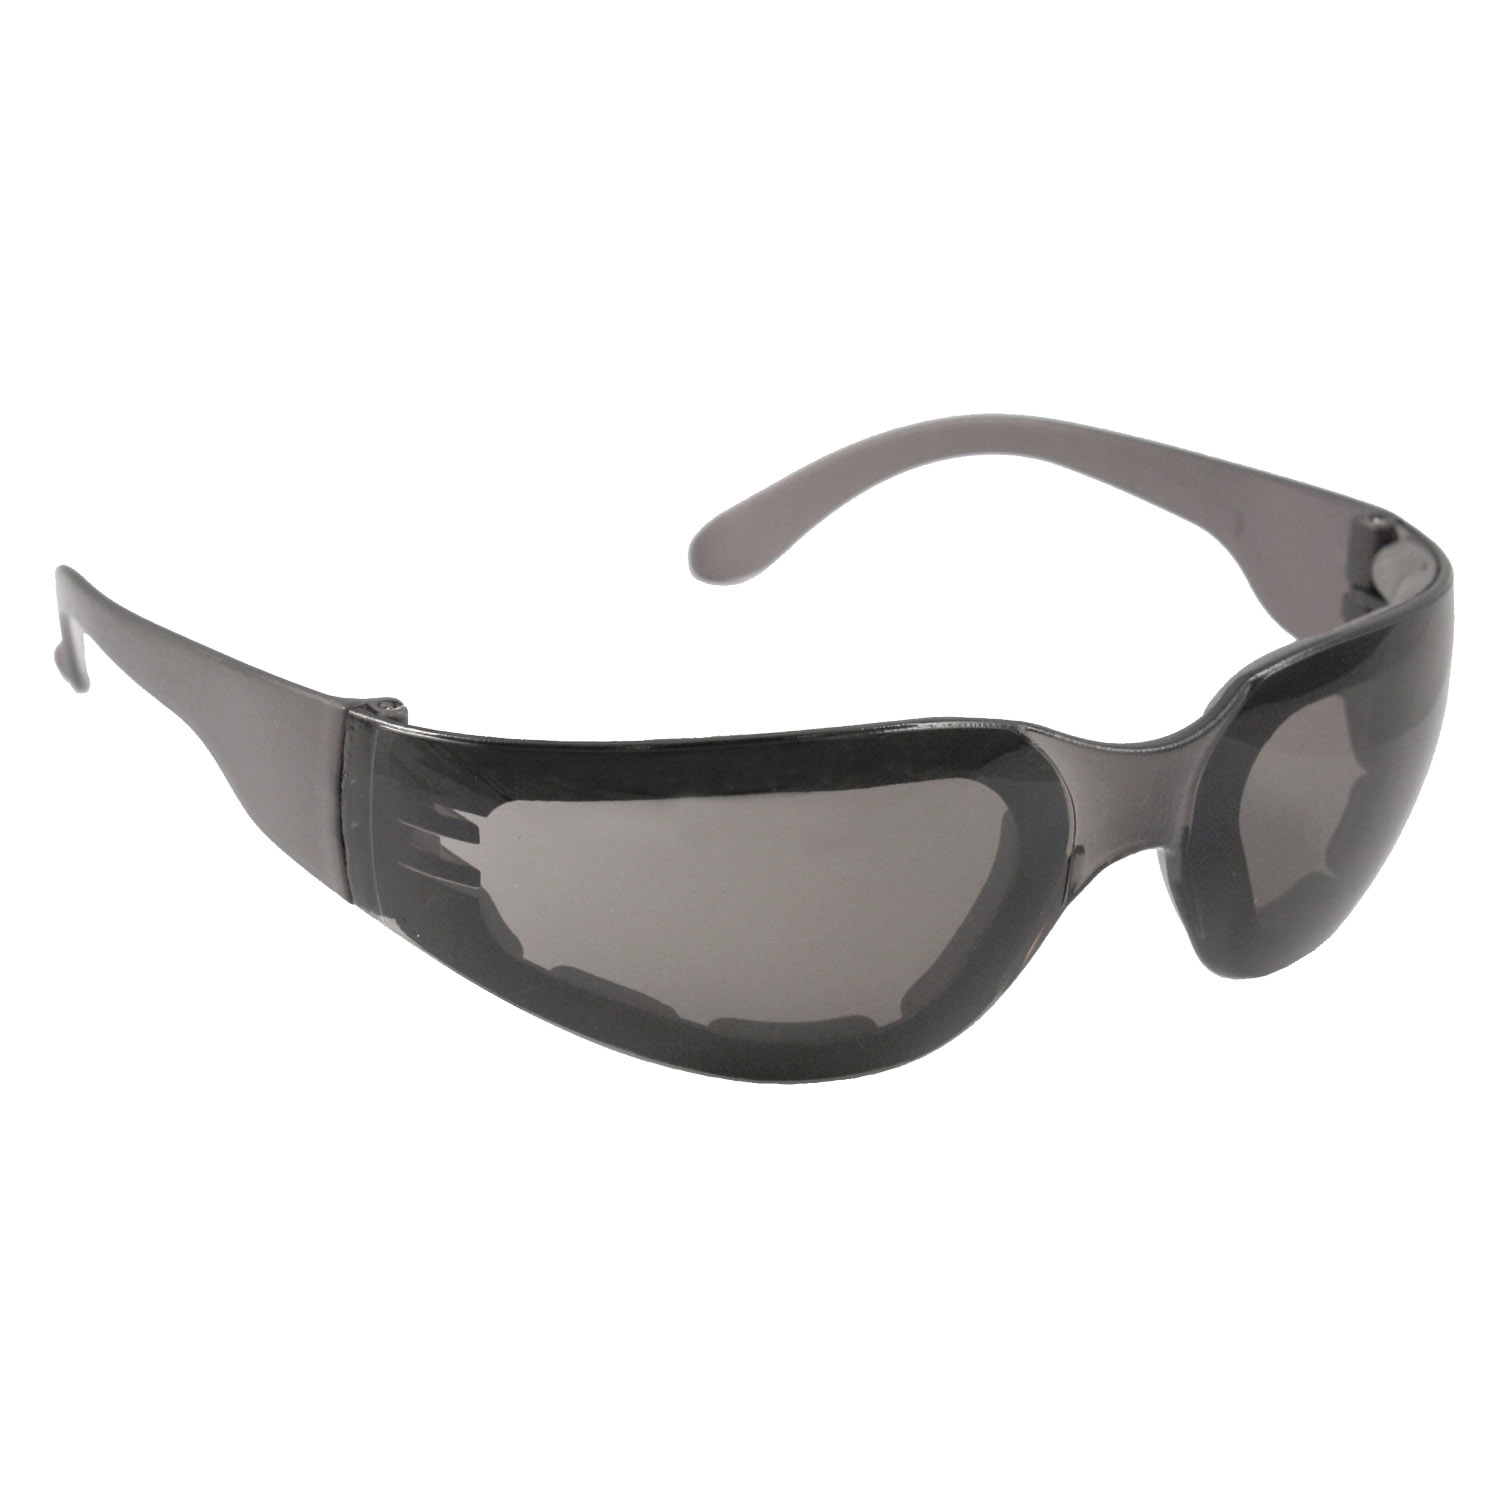 Mirage™ Foam Safety Eyewear - Smoke Frame - Smoke Anti-Fog Lens - Anti-Fog Lens